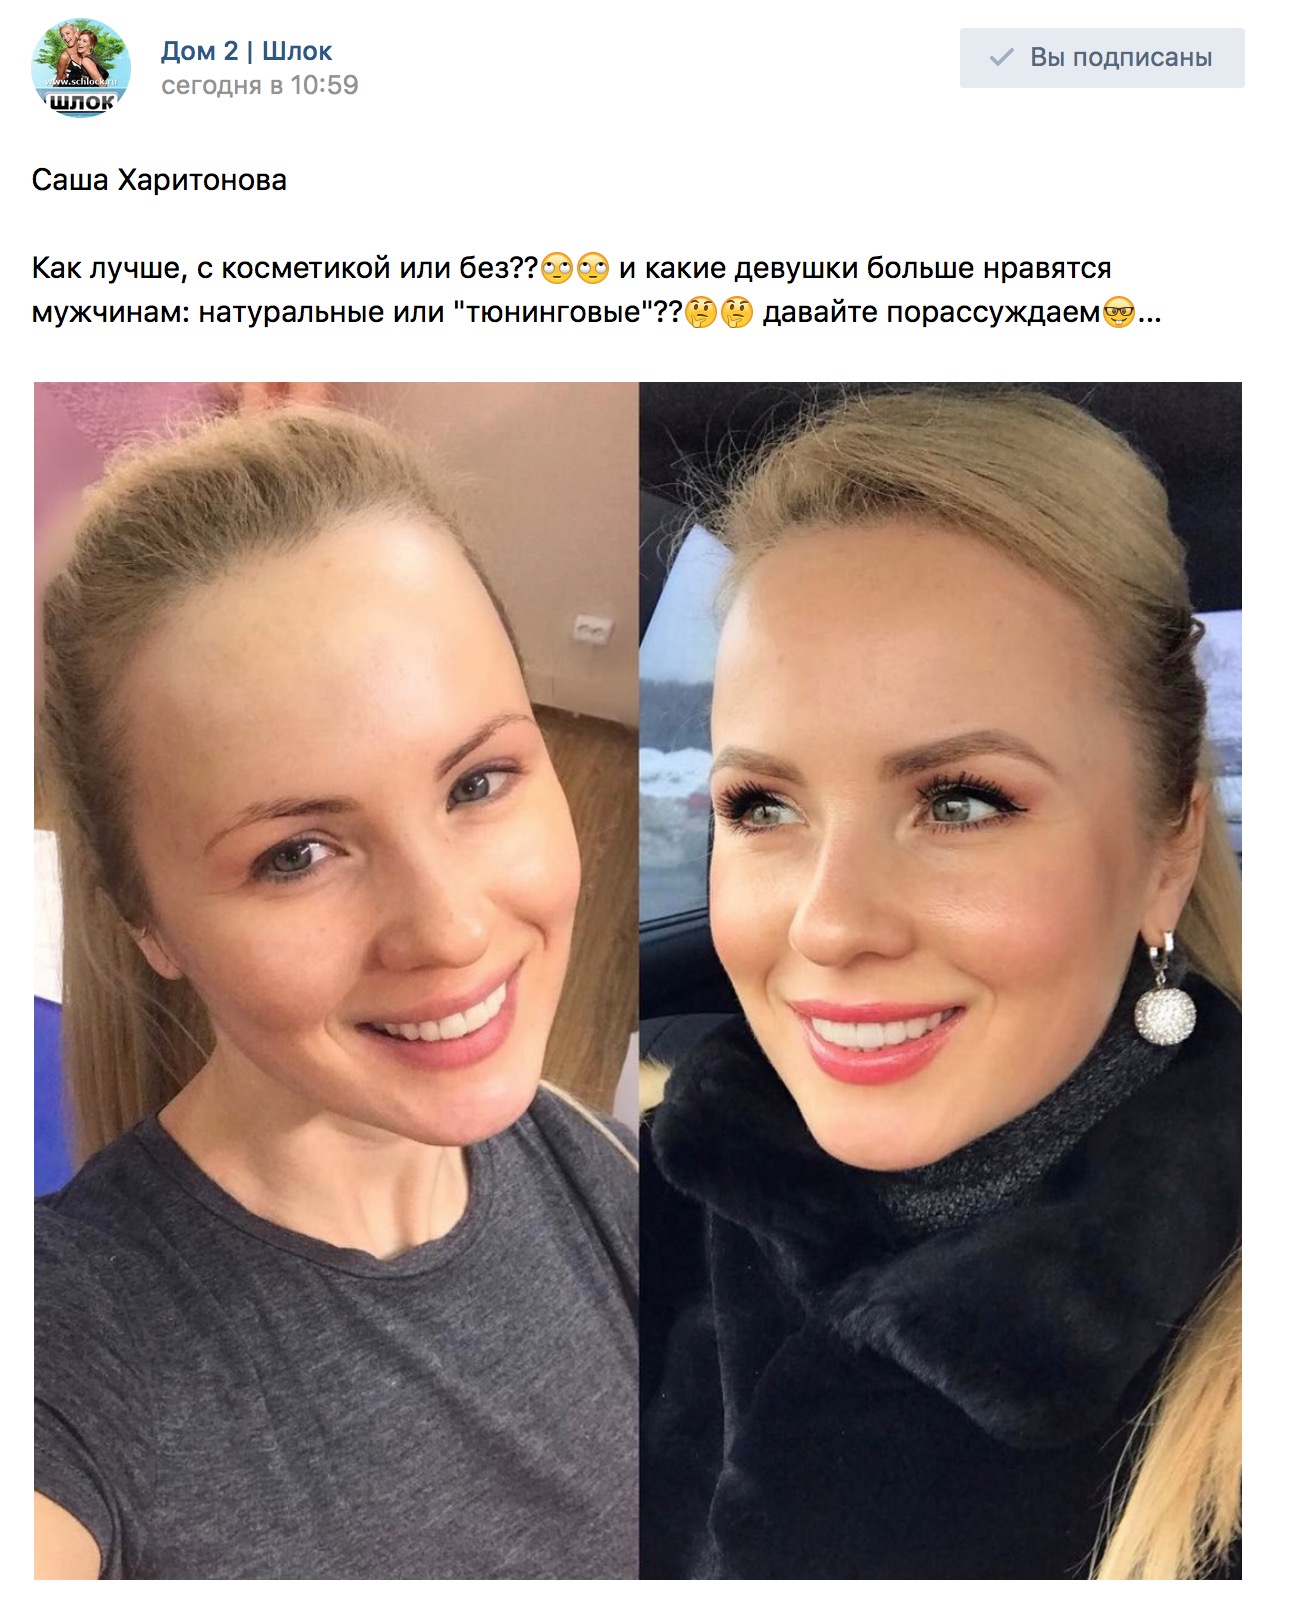 Саша Харитонова до и после пластики